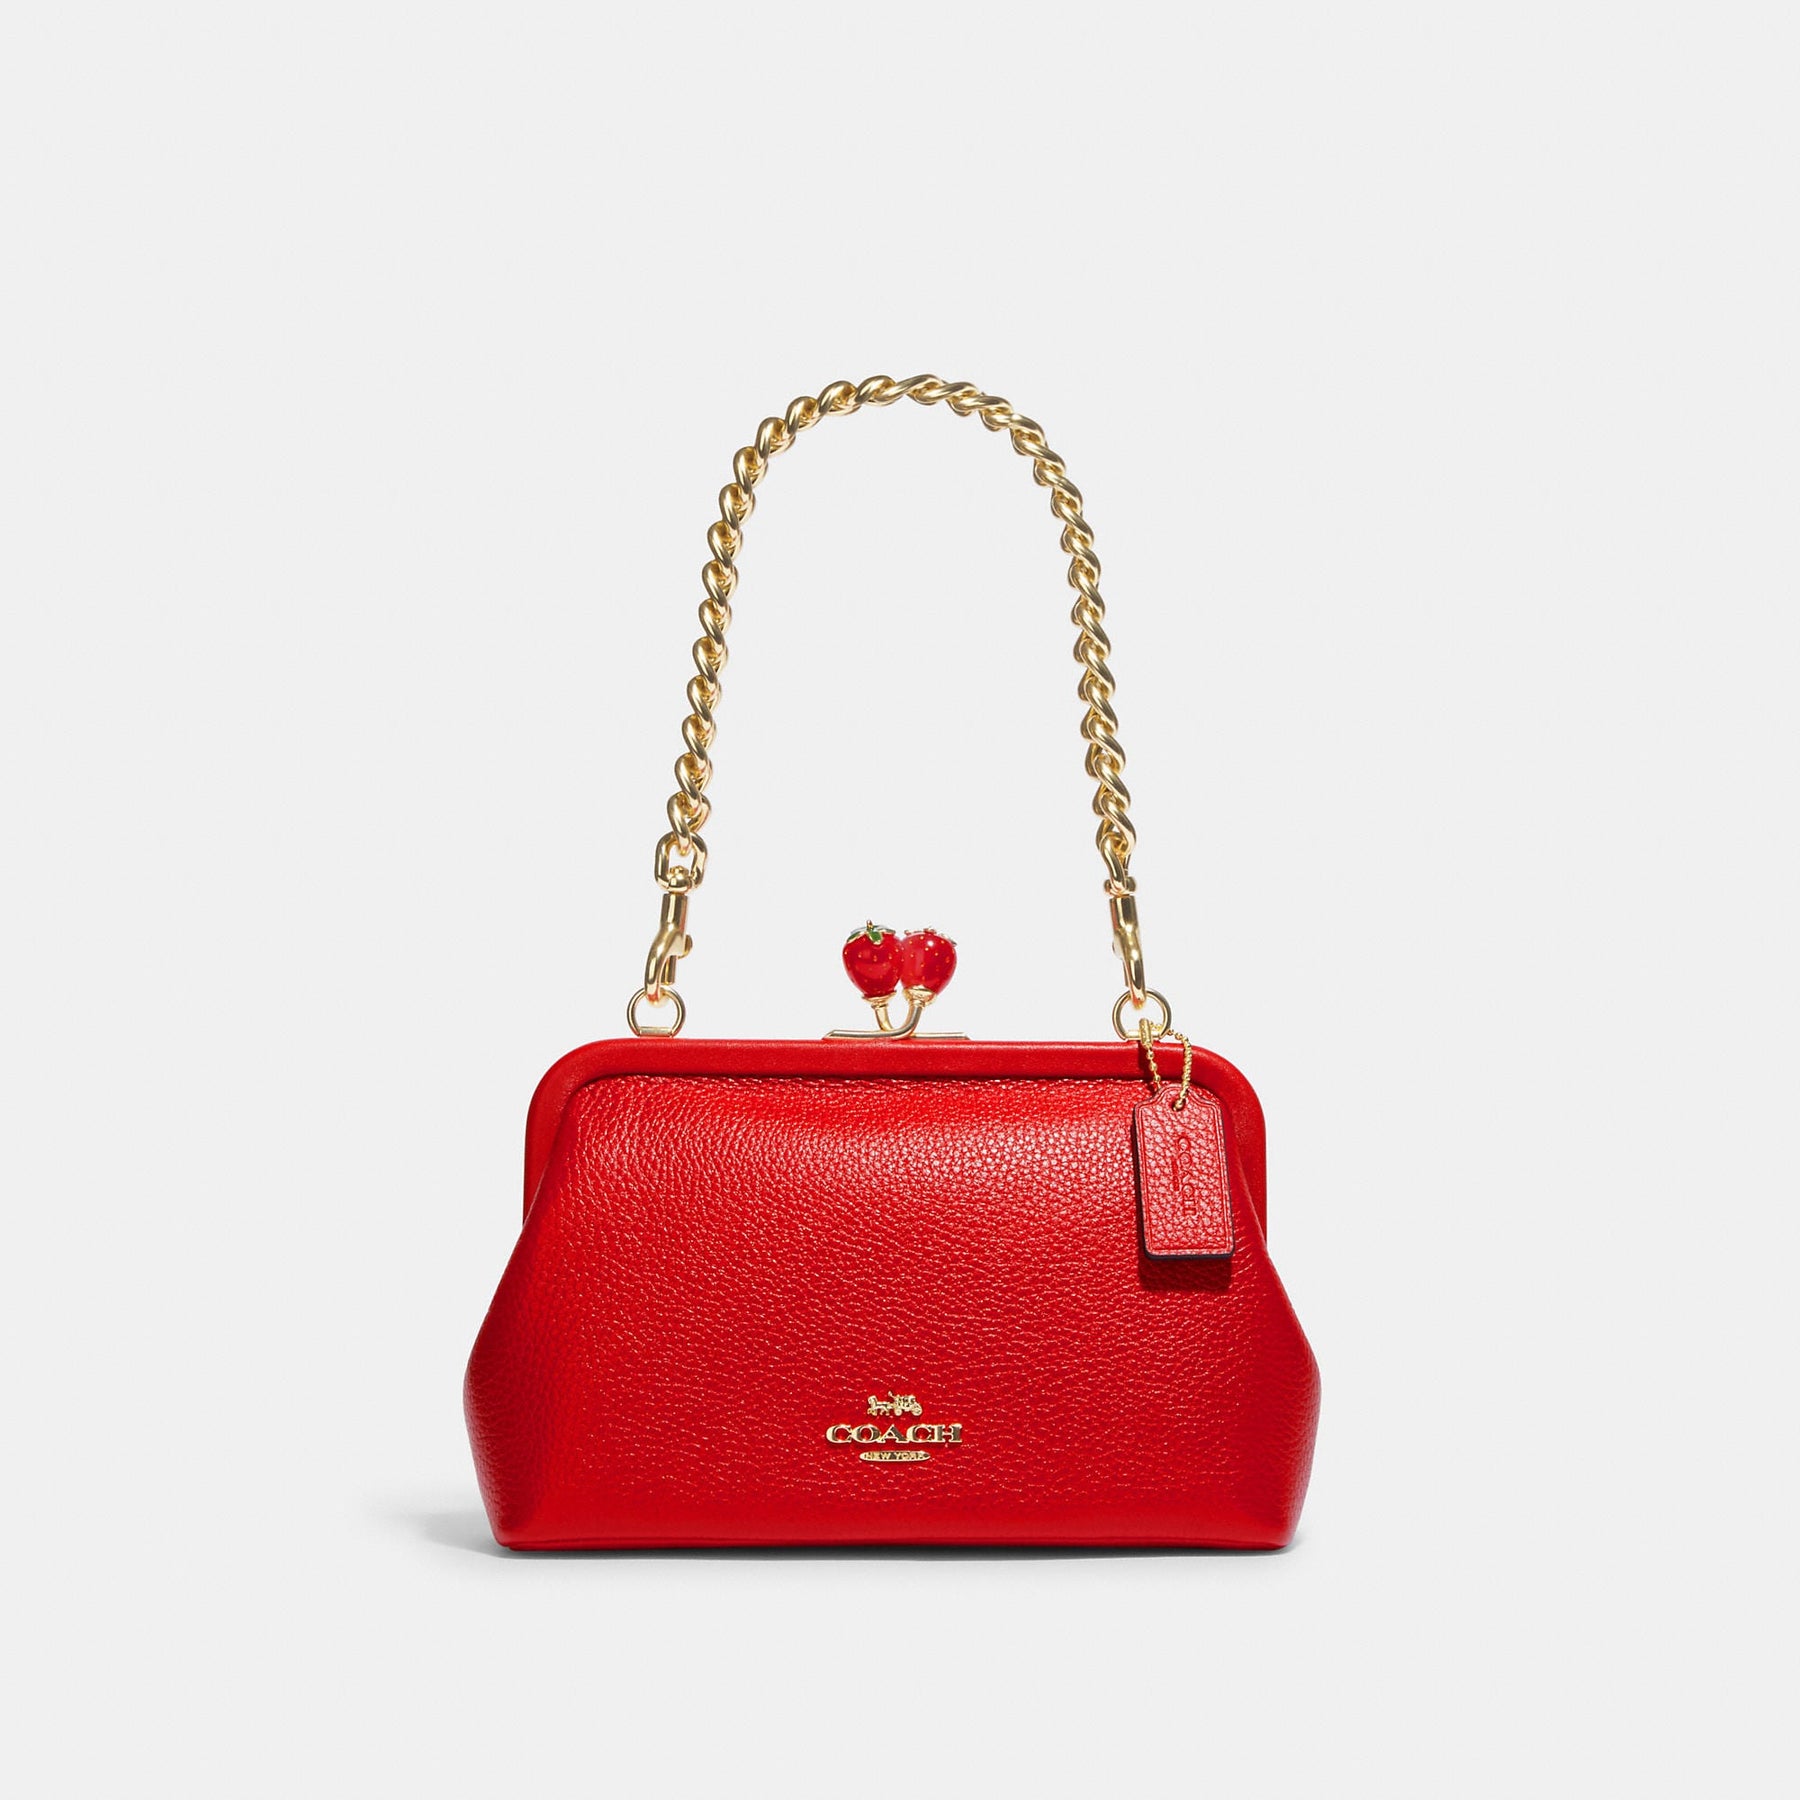 MKF Collection by Mia K Nora Premium Croco Satchel Handbag in Pink